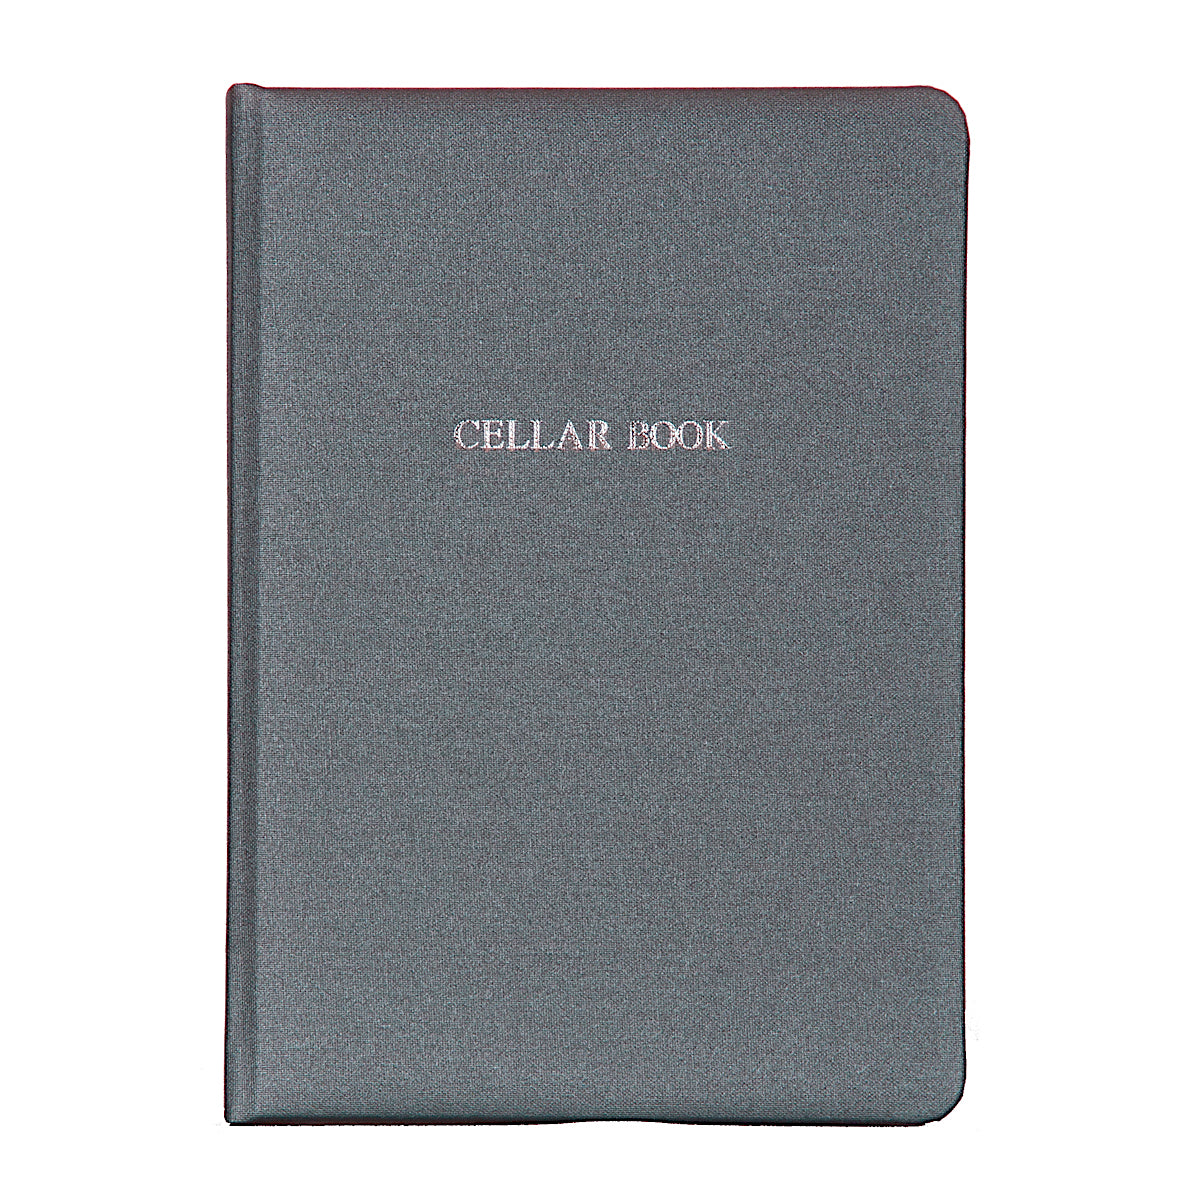 Steel Grey Buckram Cellar Book